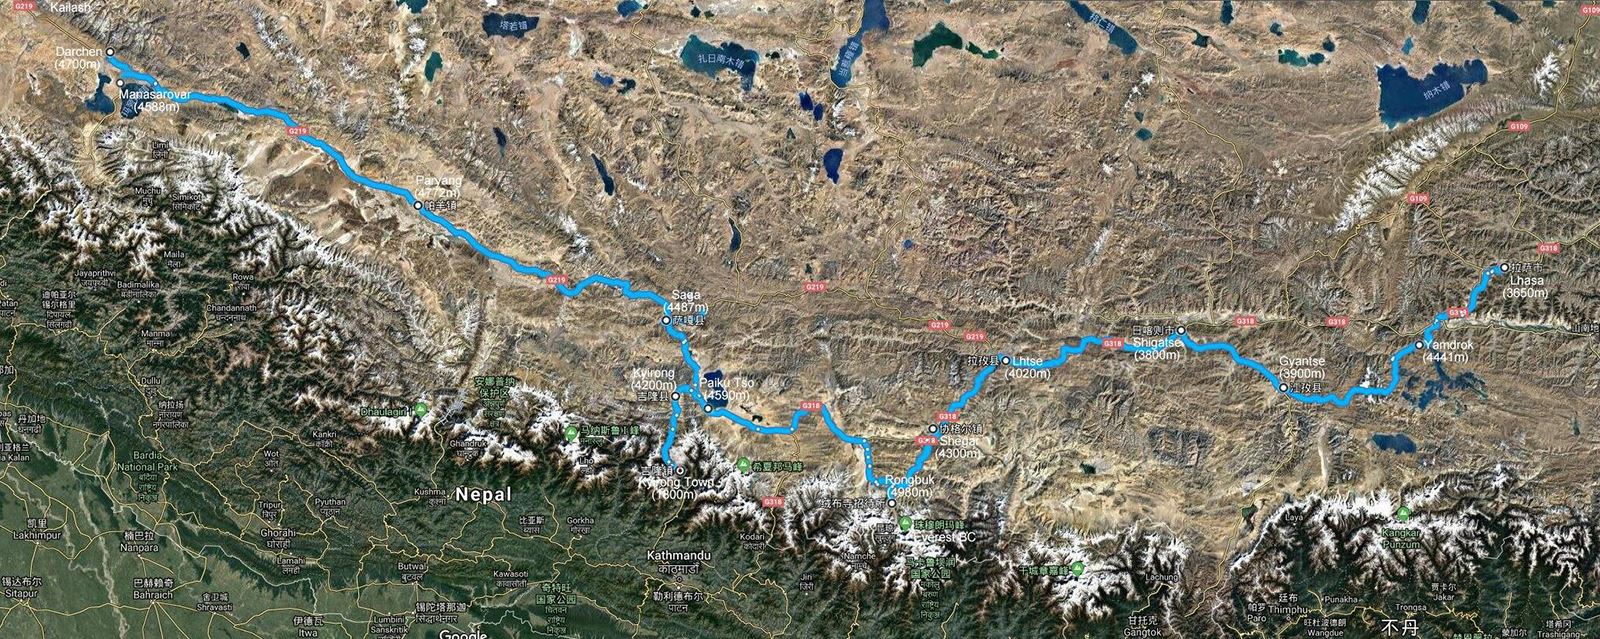 Tibet Motorradreise von Lhasa via Everest und Kailash nach Nepal